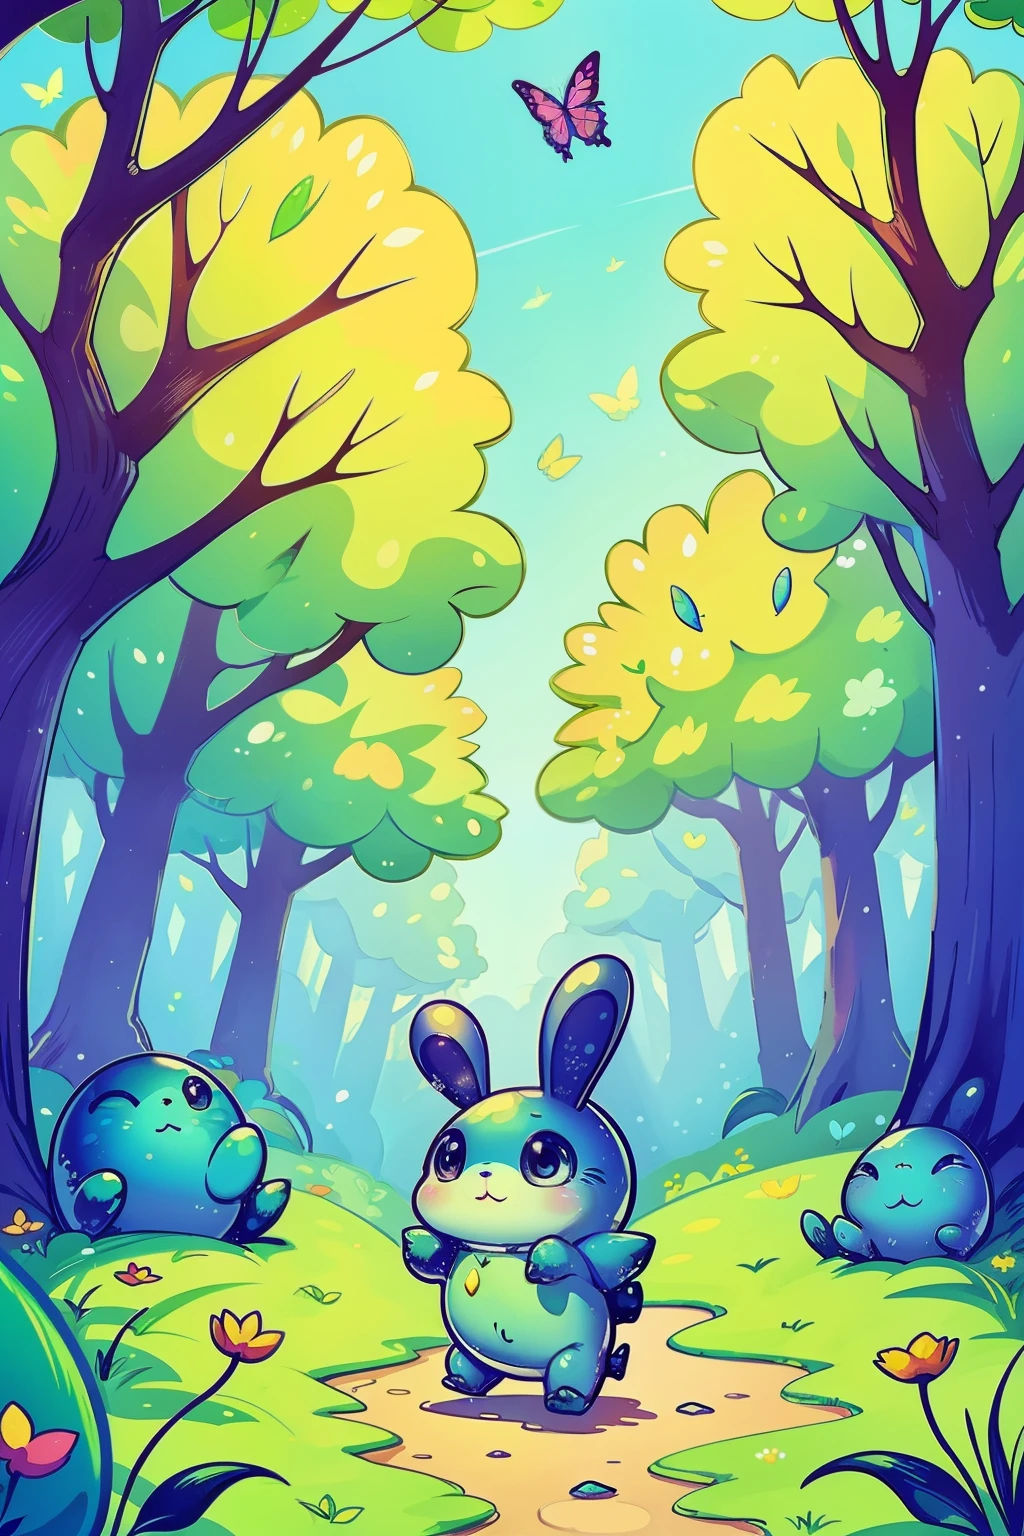 一只可爱的小粘液怪物在森林里快乐地行走, 有很多叶子的树, 花朵, 蓝天, 可爱的小兔子们跟随魔法森林里的小怪物, 蝴蝶,